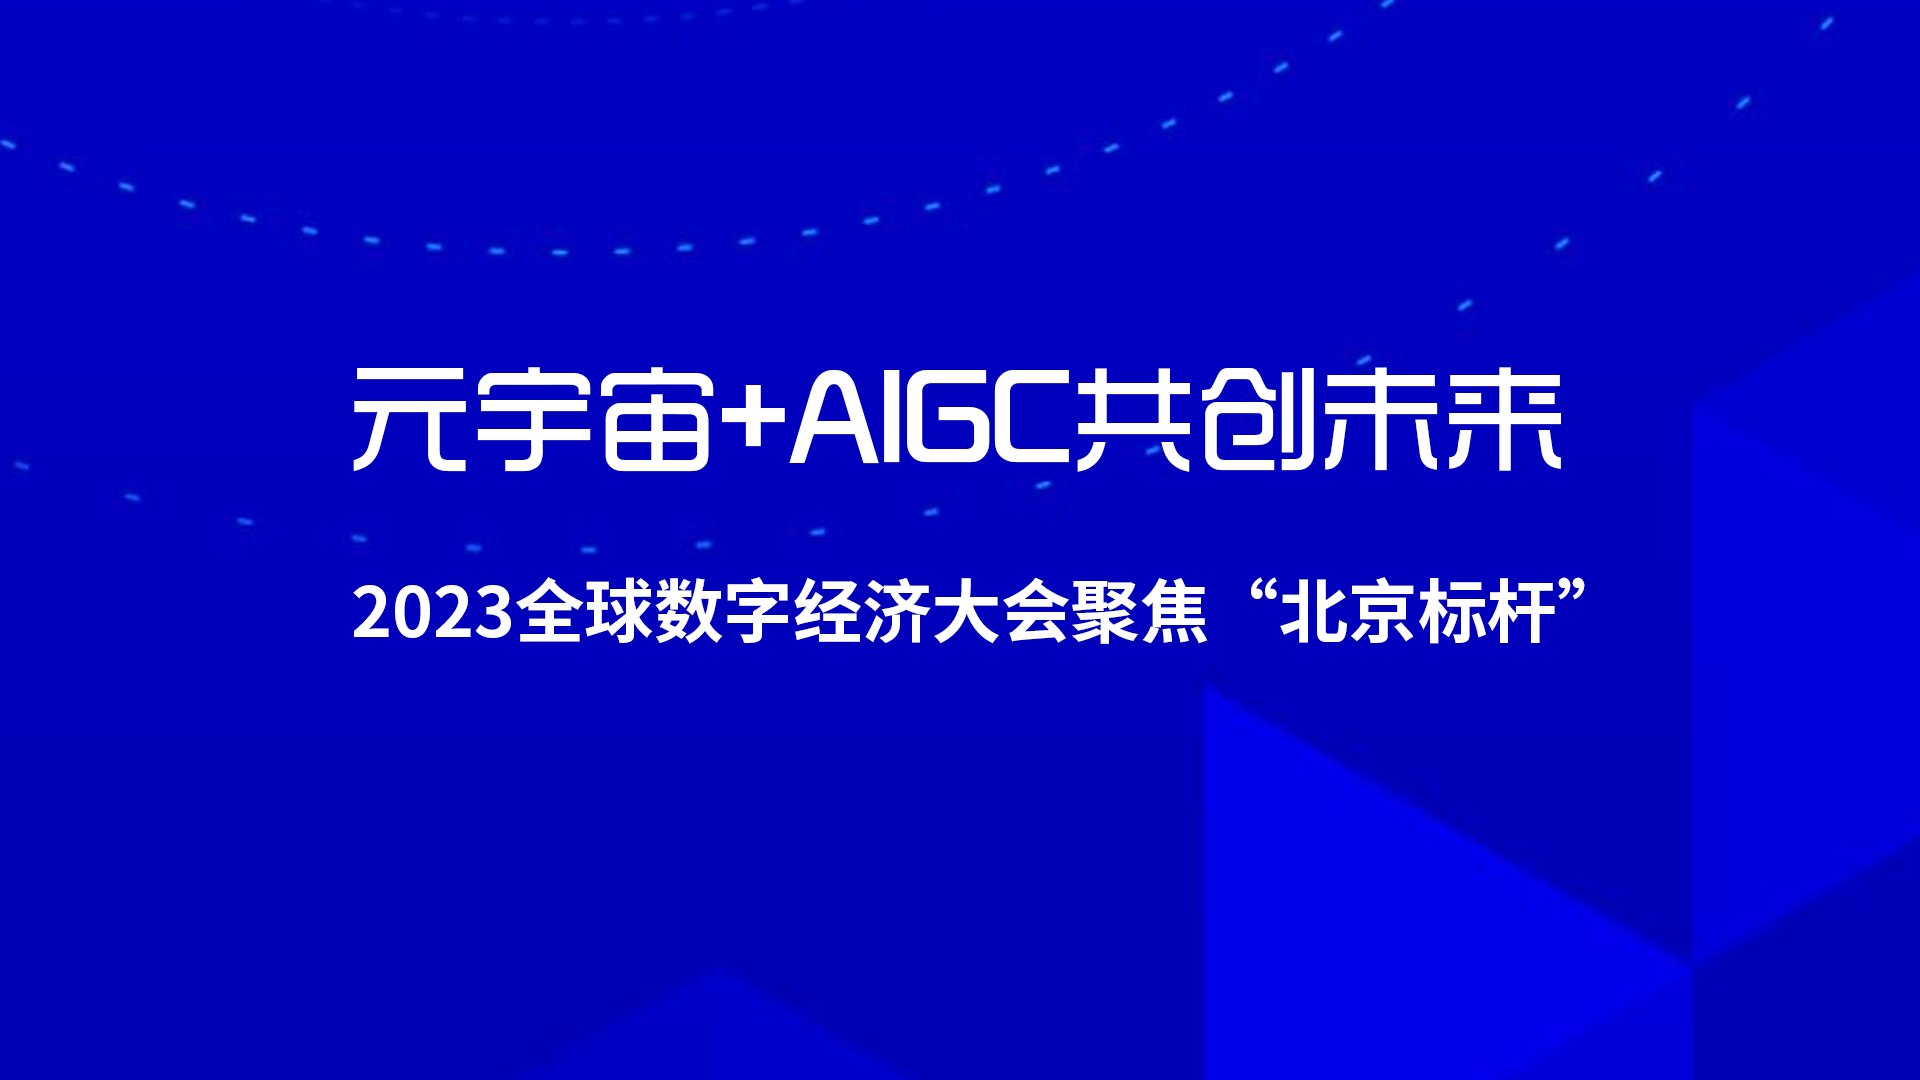 元宇宙+AIGC共创未来，2023全球数字经济大会聚焦“北京标杆”